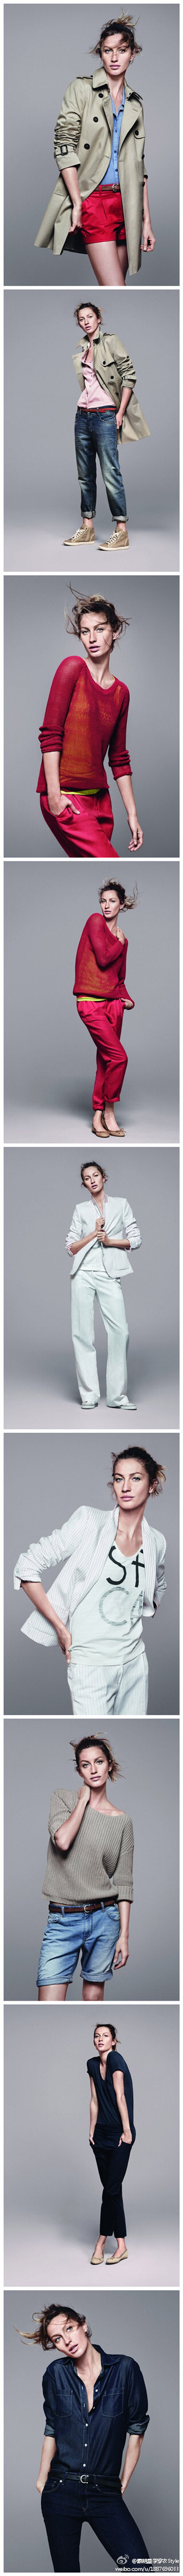 世界第一吸金超模#吉赛尔 邦臣#为#Esprit - Spring 2012#拍摄的搭配照，超有范儿~妞儿们可以学习穿着呢